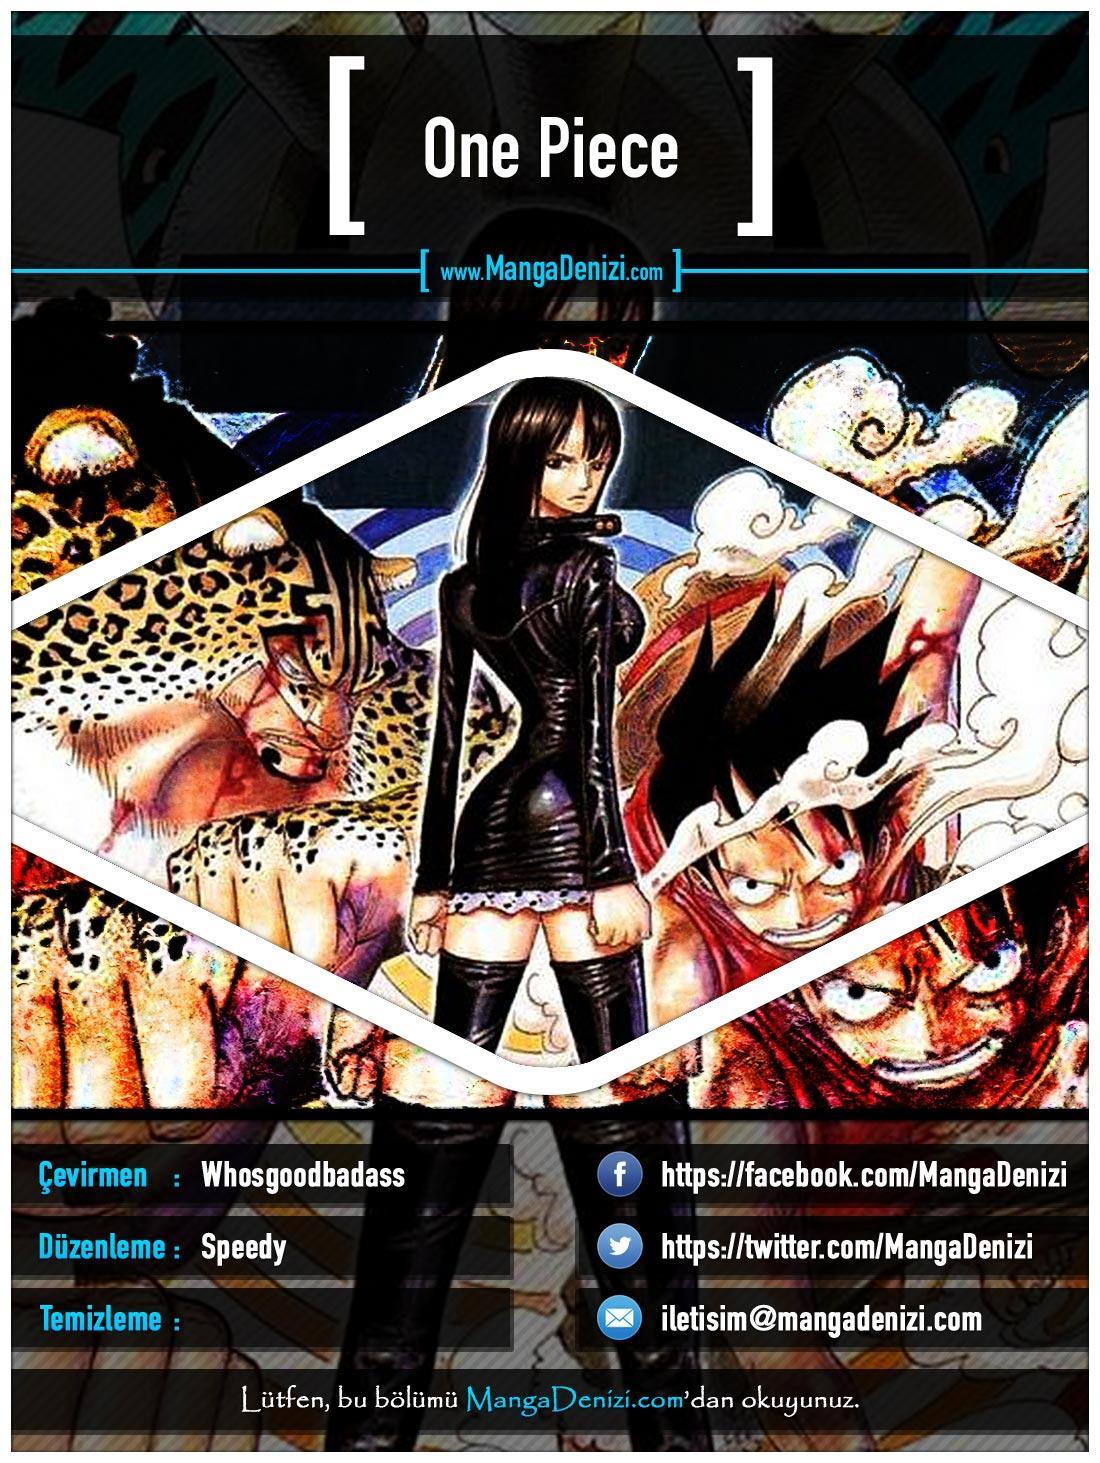 One Piece [Renkli] mangasının 0439 bölümünün 1. sayfasını okuyorsunuz.